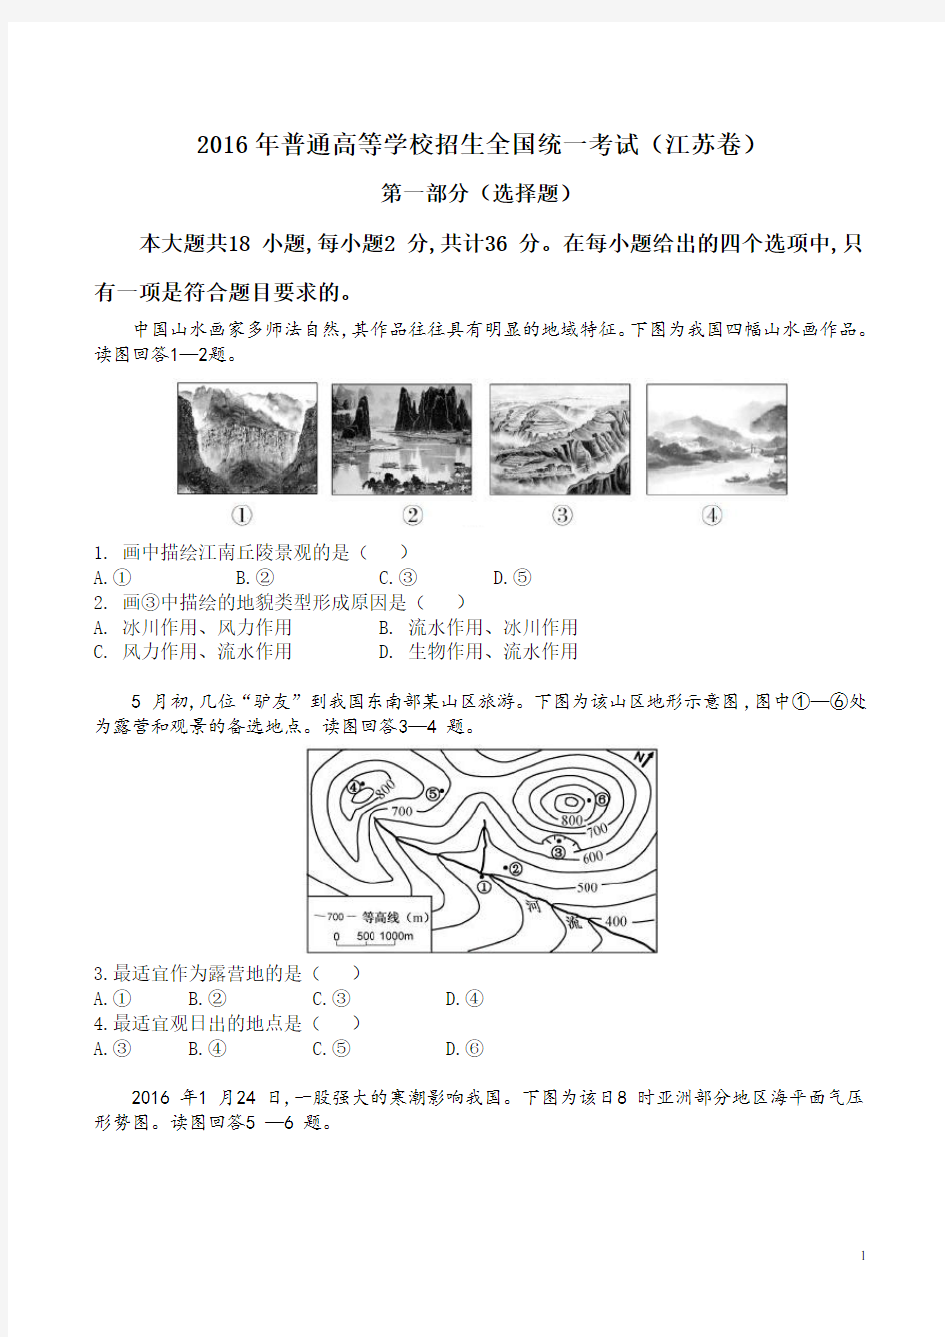 2016年高考江苏卷地理(高清版)分析